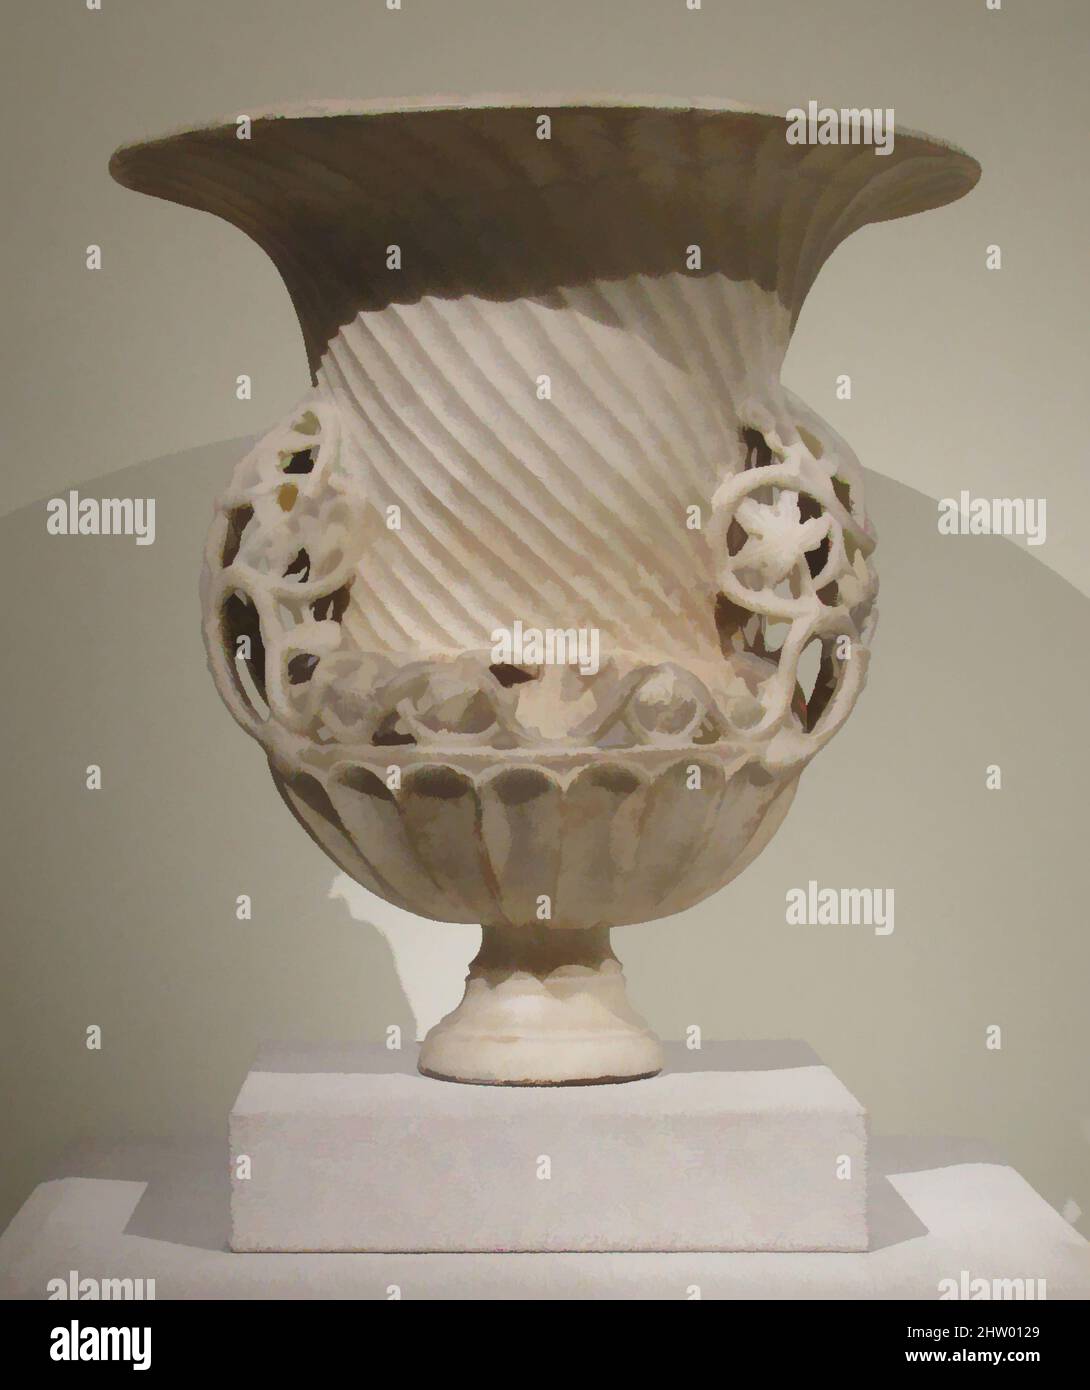 Kunst inspiriert von Marmor Urne, ca. 400, byzantinisch, Marmor, insgesamt: 21 3/4 x 20 5/8 Zoll (55,2 x 52,4 cm), Skulpturengefäße, eine durchbrochene Weinrebe ziert diese massive Urne. Solche Vasen werden oft sowohl in weltlichen als auch religiösen Kunstwerken der Zeit dargestellt, darunter Mosaiken, klassische Werke, die von Artotop mit einem Schuss Moderne modernisiert wurden. Formen, Farbe und Wert, auffällige visuelle Wirkung auf Kunst. Emotionen durch Freiheit von Kunstwerken auf zeitgemäße Weise. Eine zeitlose Botschaft, die eine wild kreative neue Richtung verfolgt. Künstler, die sich dem digitalen Medium zuwenden und die Artotop NFT erschaffen Stockfoto